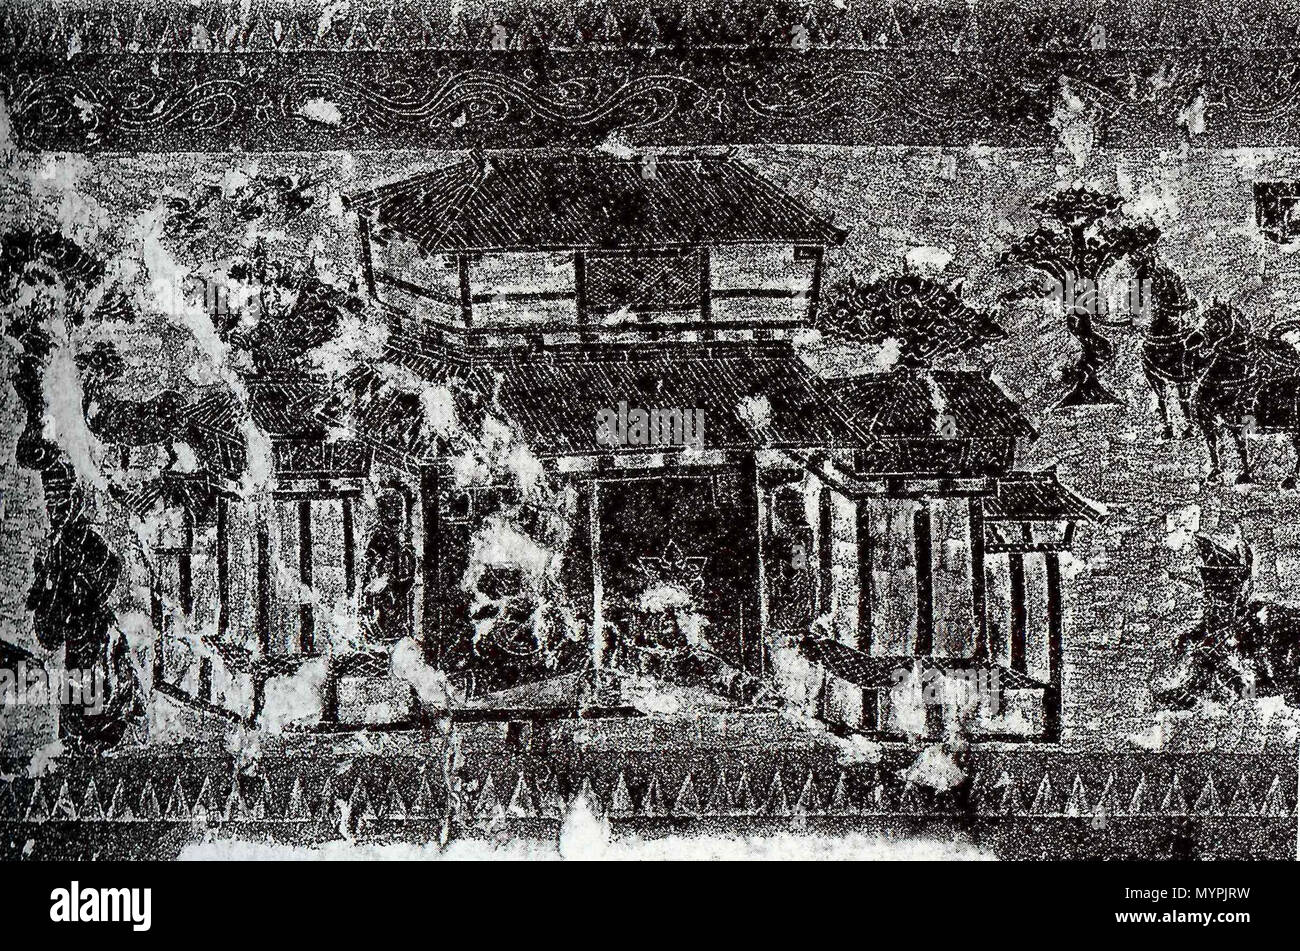 . Uno sfregamento di un cinese della dinastia Han (202 BC - 220 AD) pietra pittorica (cioè la Yinan scultura in pietra della provincia di Shandong, Cina) che mostra un culto ancestrale hall (citang 祠堂) con le porte chiuse, una persona al di fuori di fare un'offerta sacrificale per i suoi antenati, e i cavalli e gli alberi in background. 202 A.C. al 220 D.C. Sconosciuto 463 lo sfregamento di un Citang Han Foto Stock